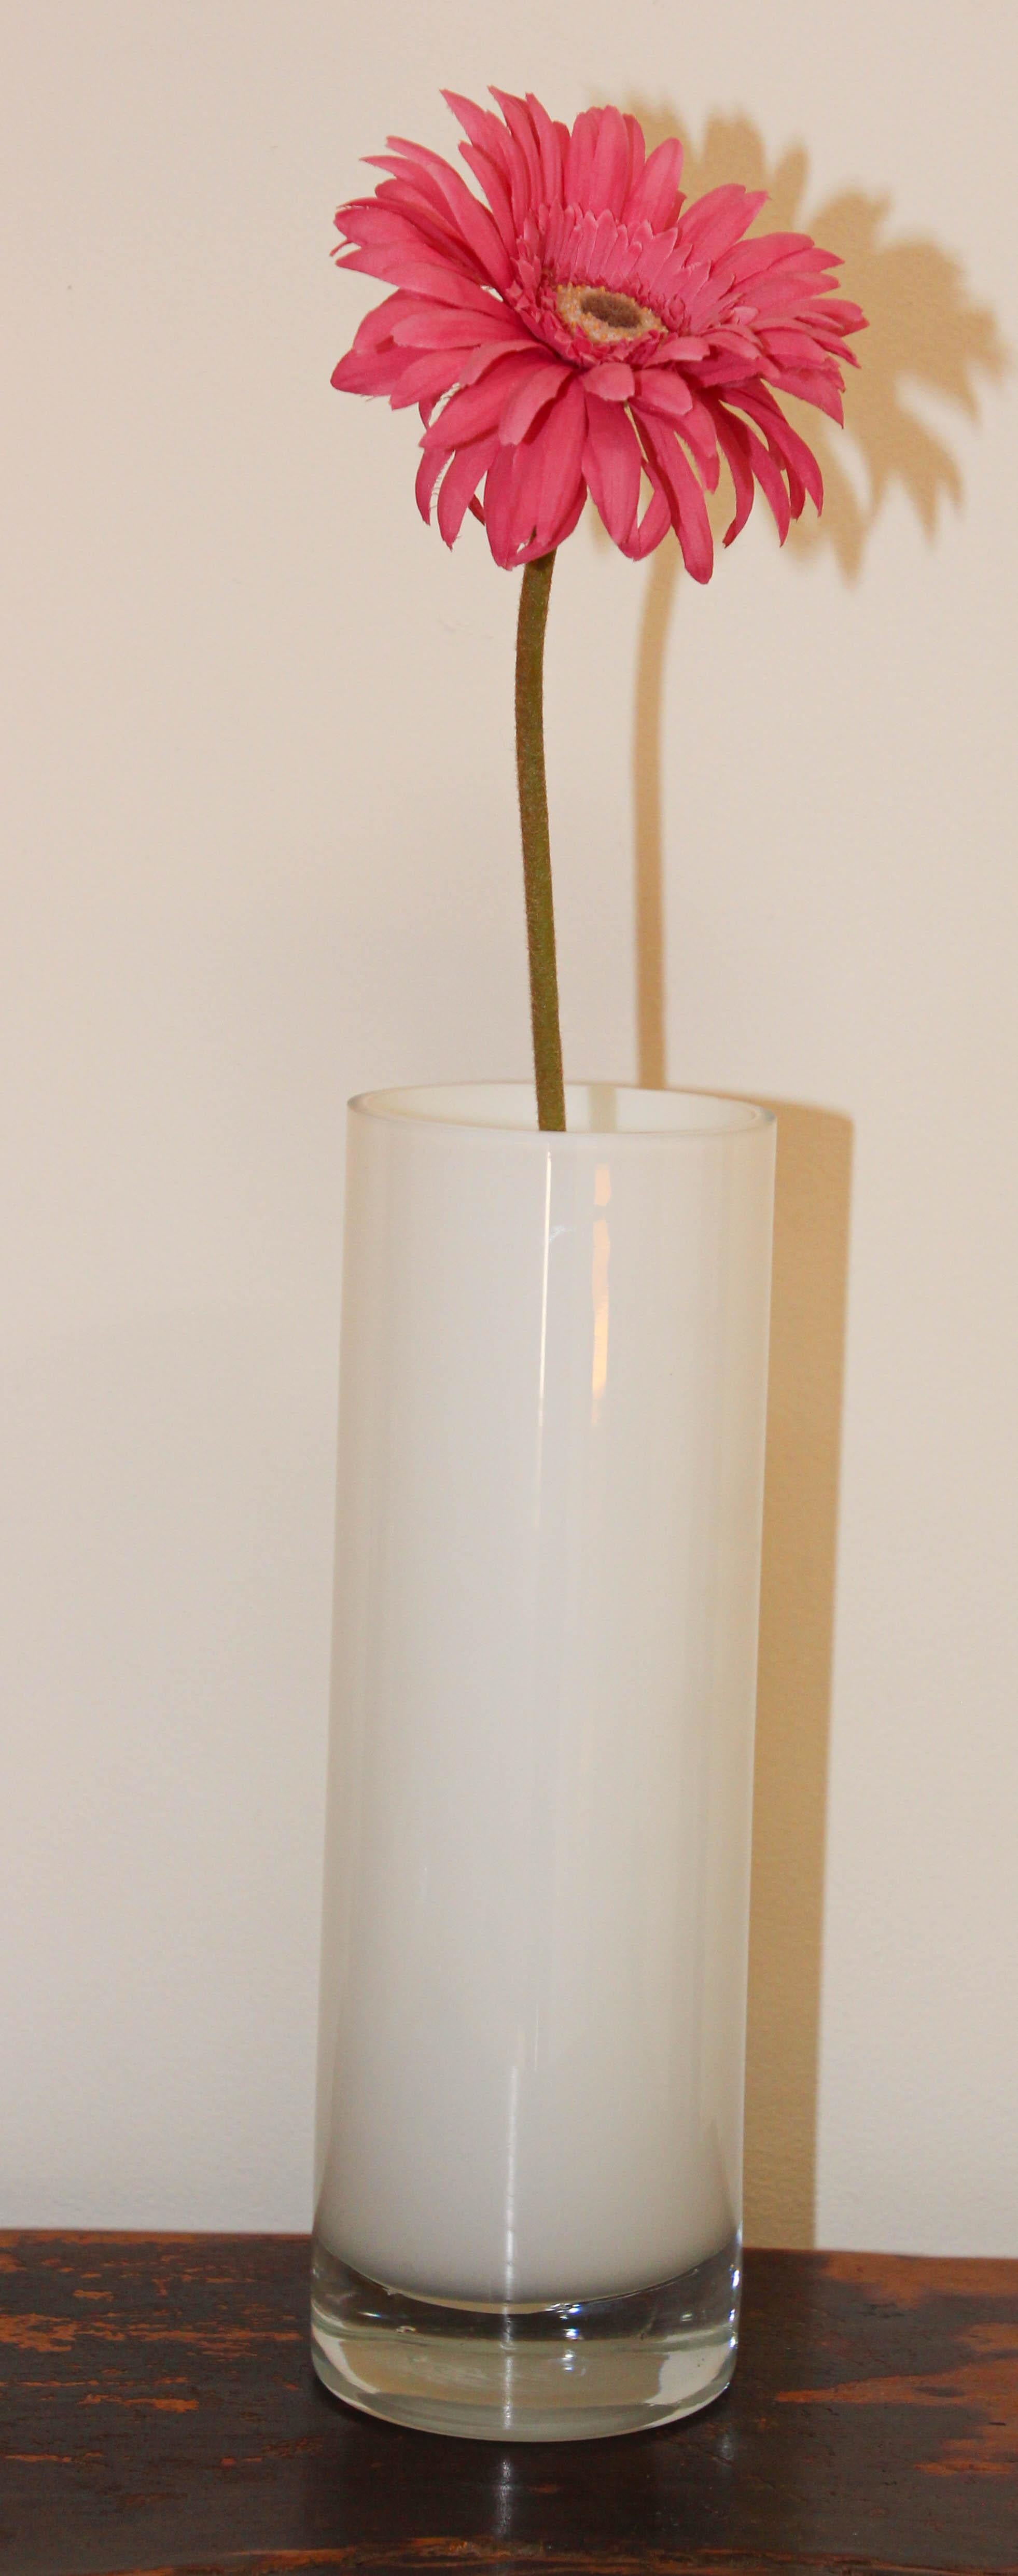 Modernistische, minimalistische Blumenvase aus weißem Glas mit klarem Glasboden mit einigen Blasen.
Diese minimalistische weiße Vase in sehr moderner Form passt zu jedem Design.
Mit jedem Blumenarrangement, von farbenfroh bis hin zu grünen Blättern,